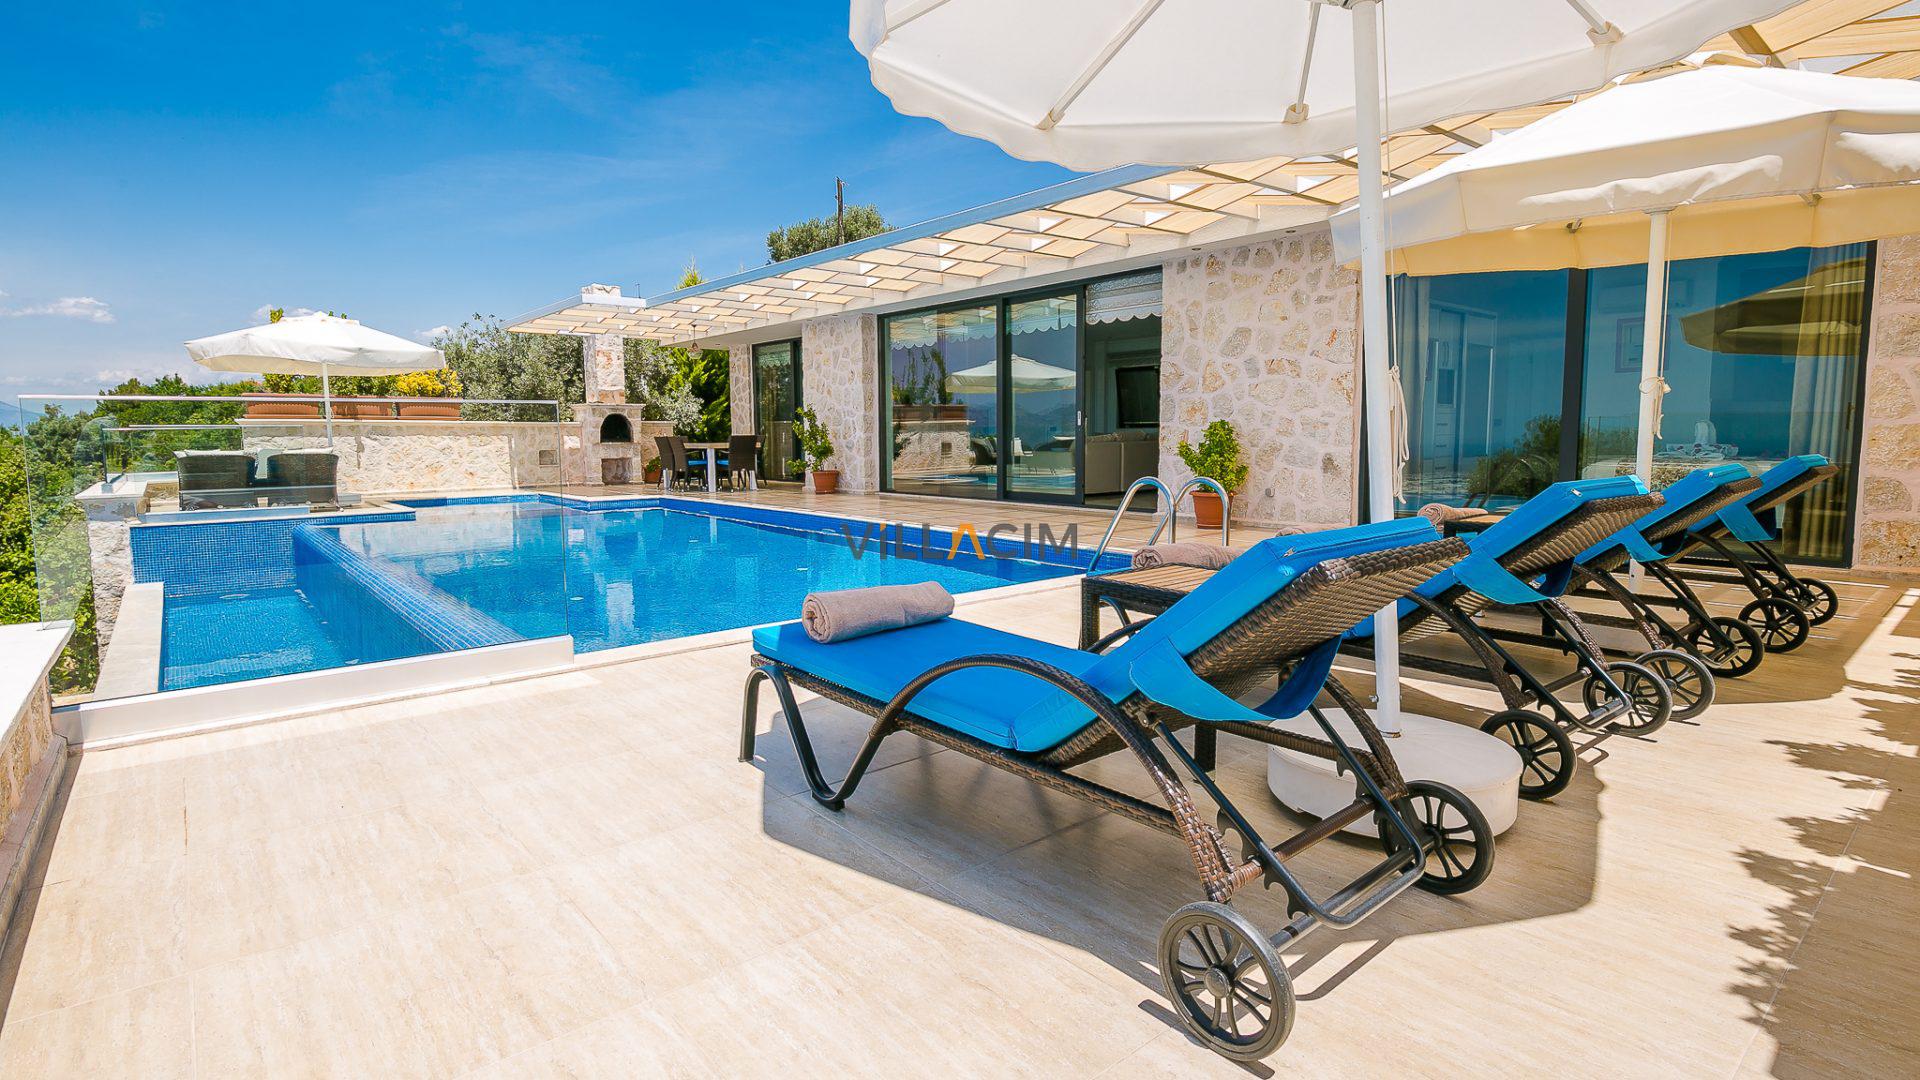 Antalya Kiralık Villa - Antalya En Uygun Kiralık Villa Fiyatları, Villacım